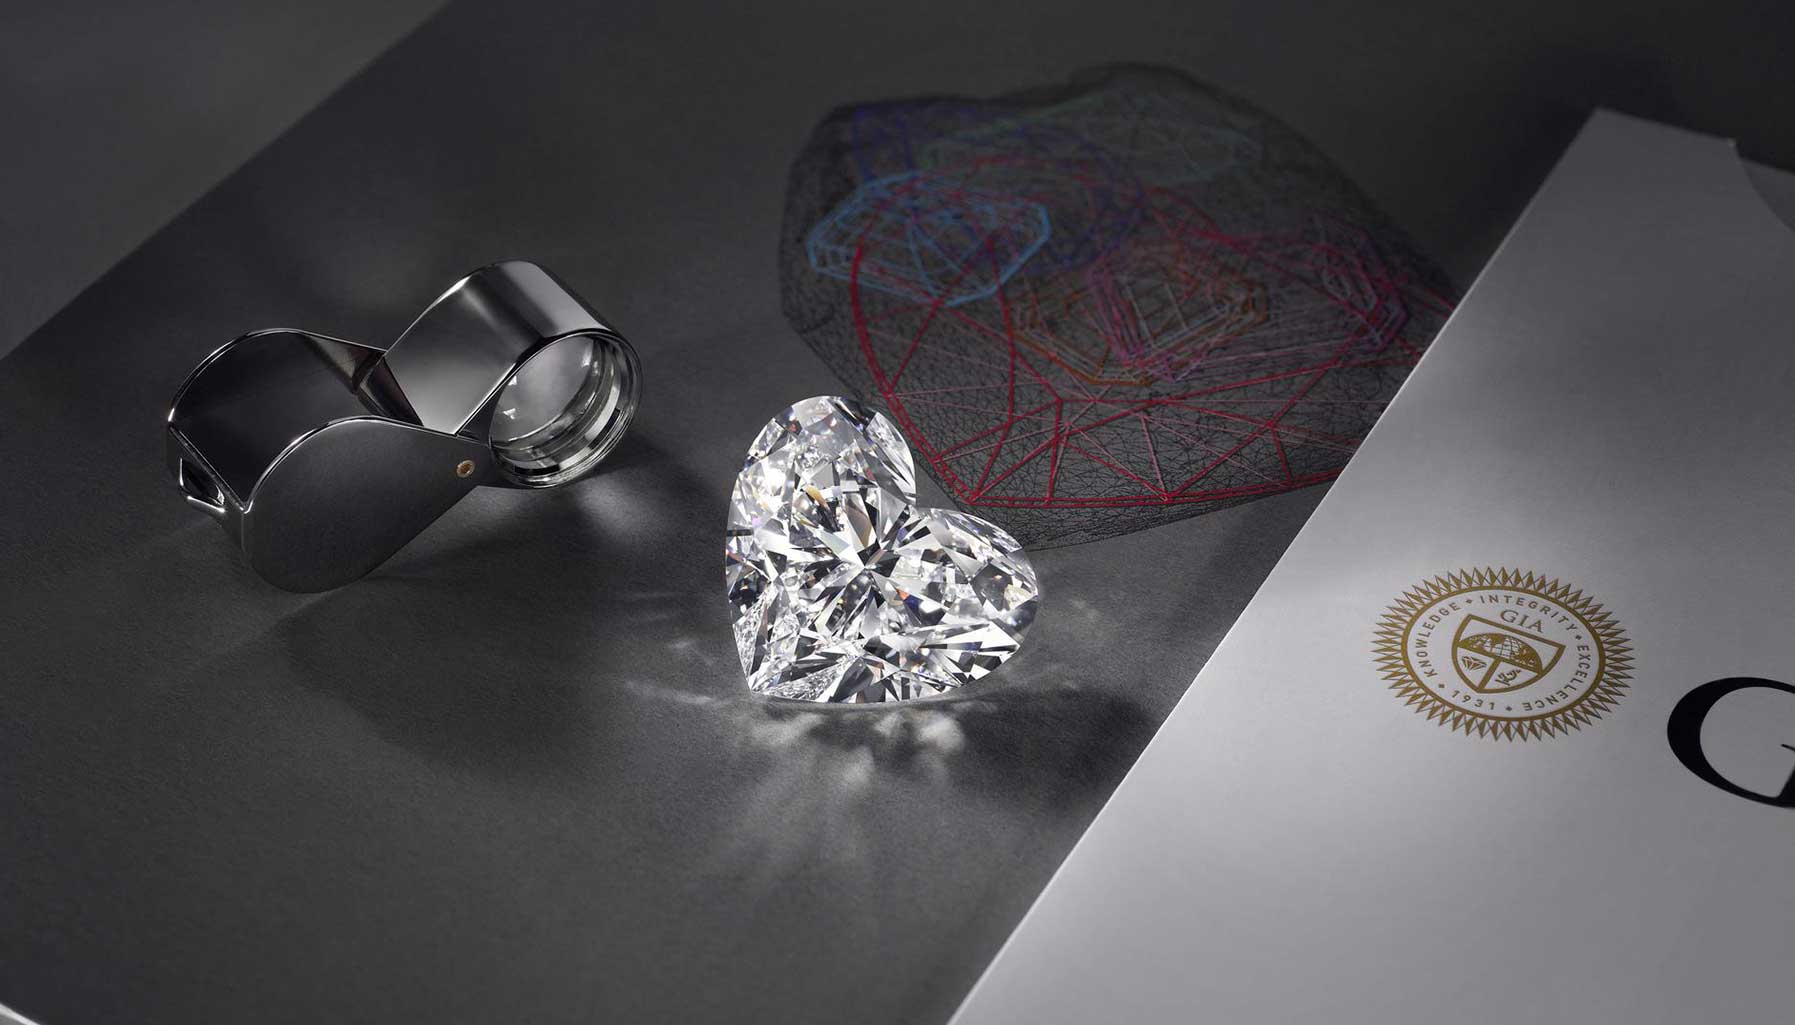 Viên kim cương là biểu tượng của sự quý giá và đẳng cấp. Hình dáng độc đáo của nó đã thu hút ánh nhìn của các tín đồ thời trang và sành điệu. Hãy xem hình ảnh của viên kim cương để cảm nhận được sự sang trọng và đẳng cấp mà nó mang lại.